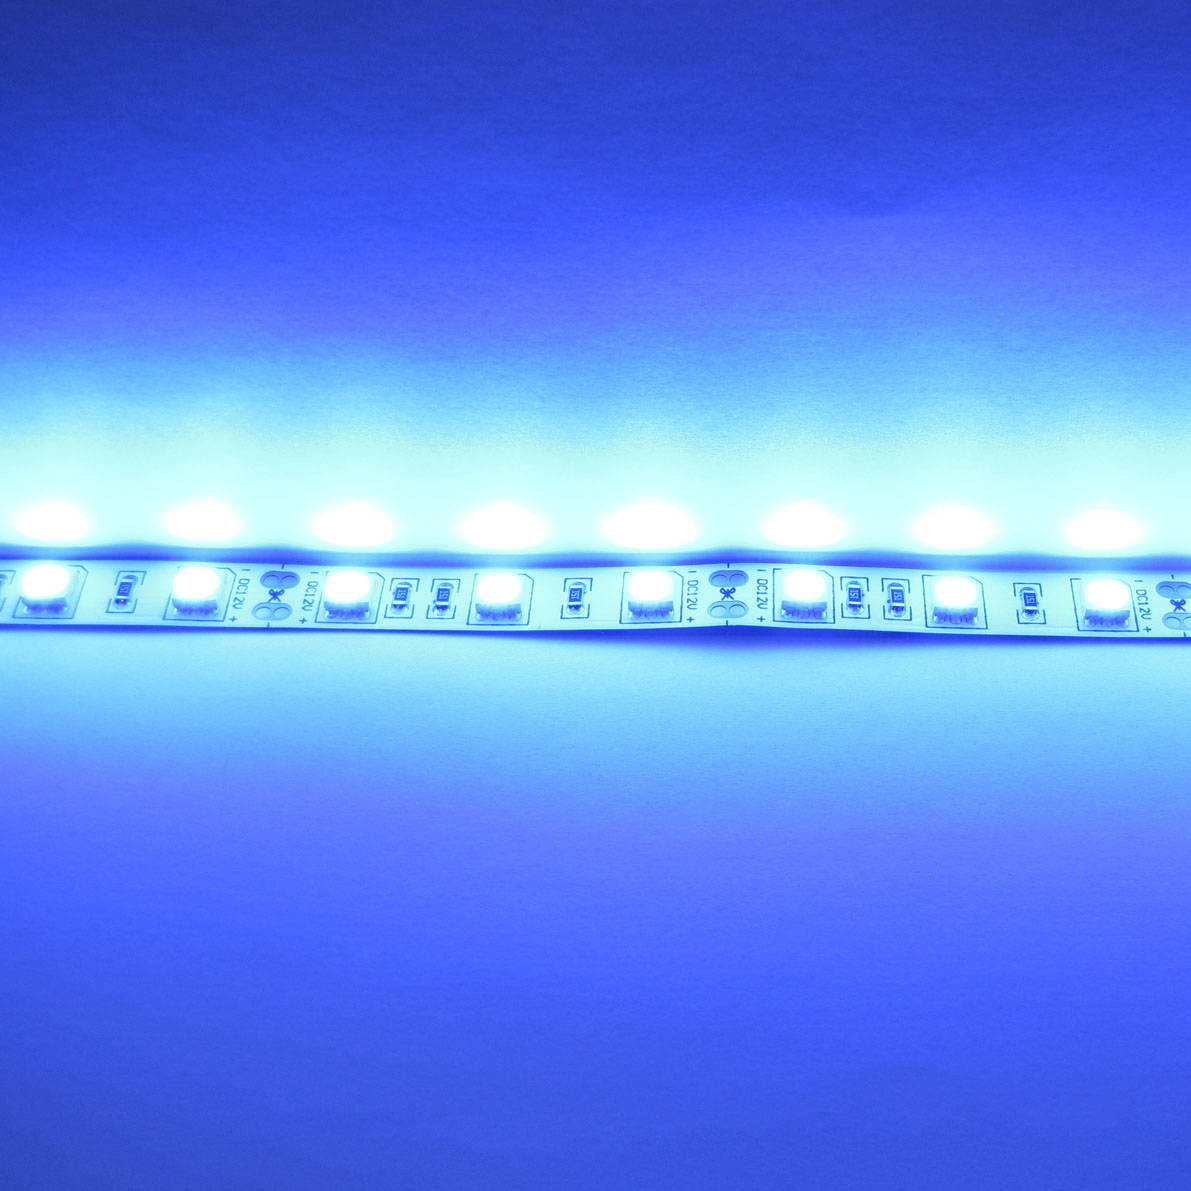 светодиодная лента standart class, 5050, 60led/m, blue, 12v, ip33, артикул 52719